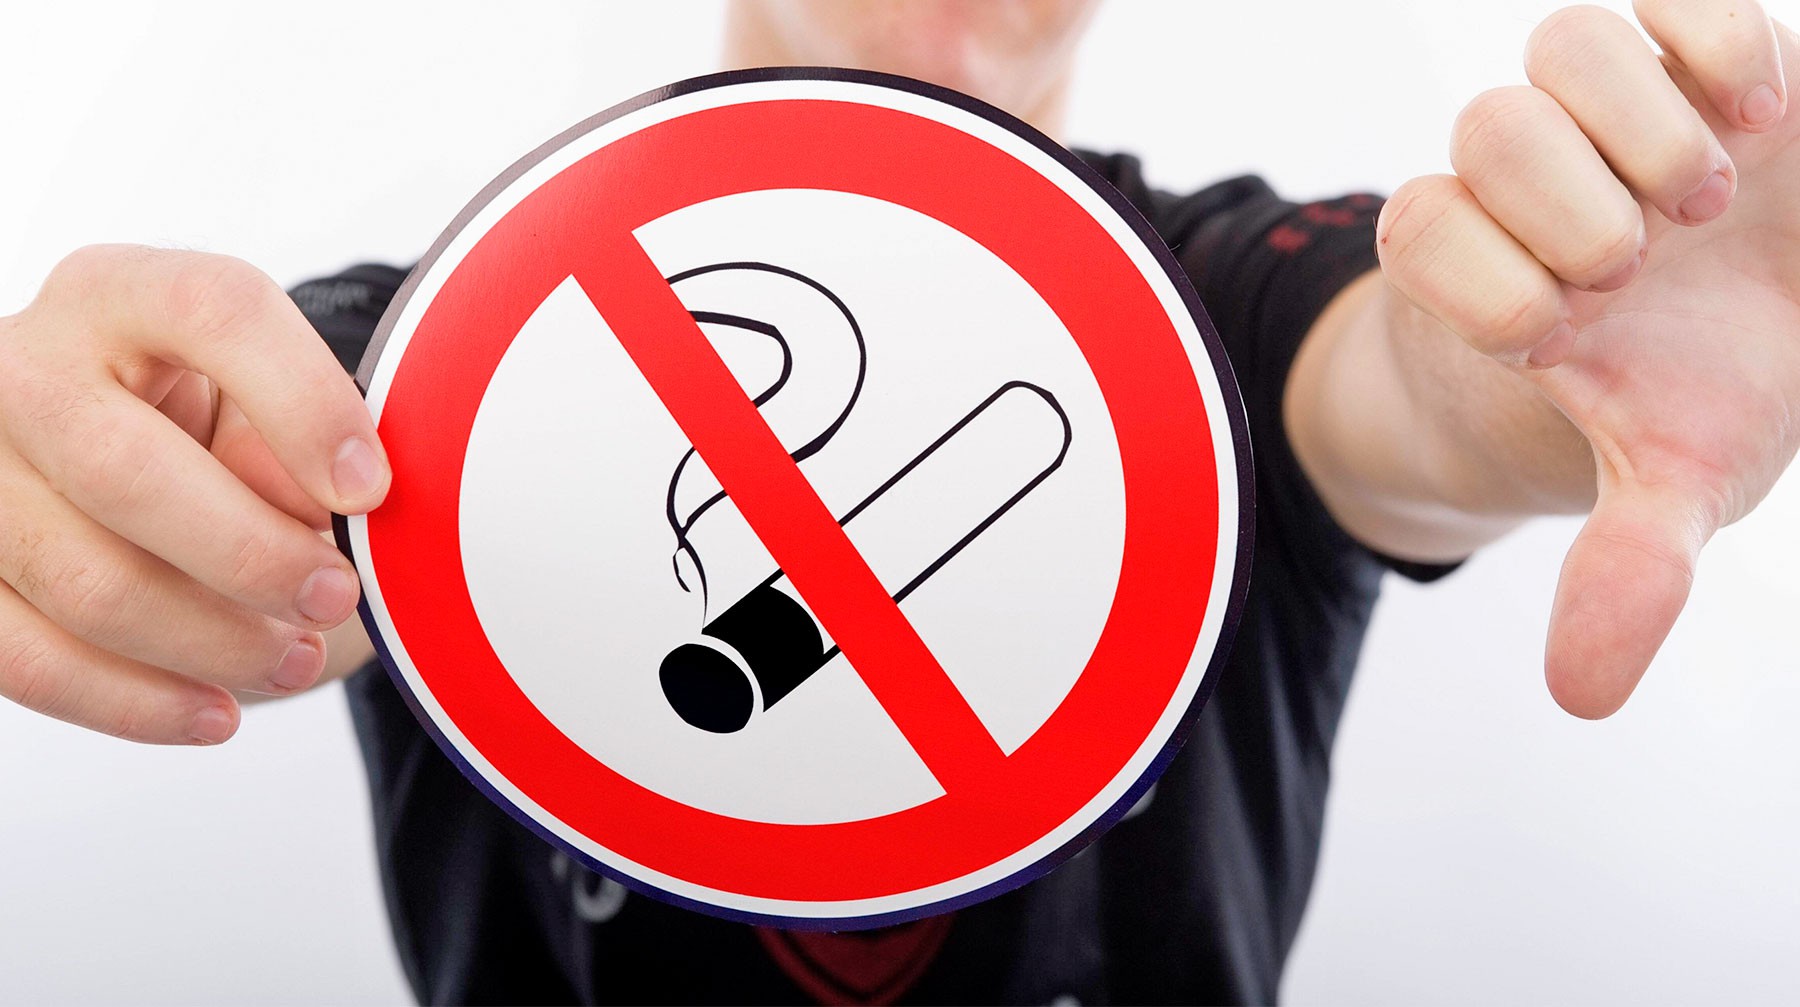 Dailystorm - Минздрав к 2050 году планирует свести к нулю потребление табака в России